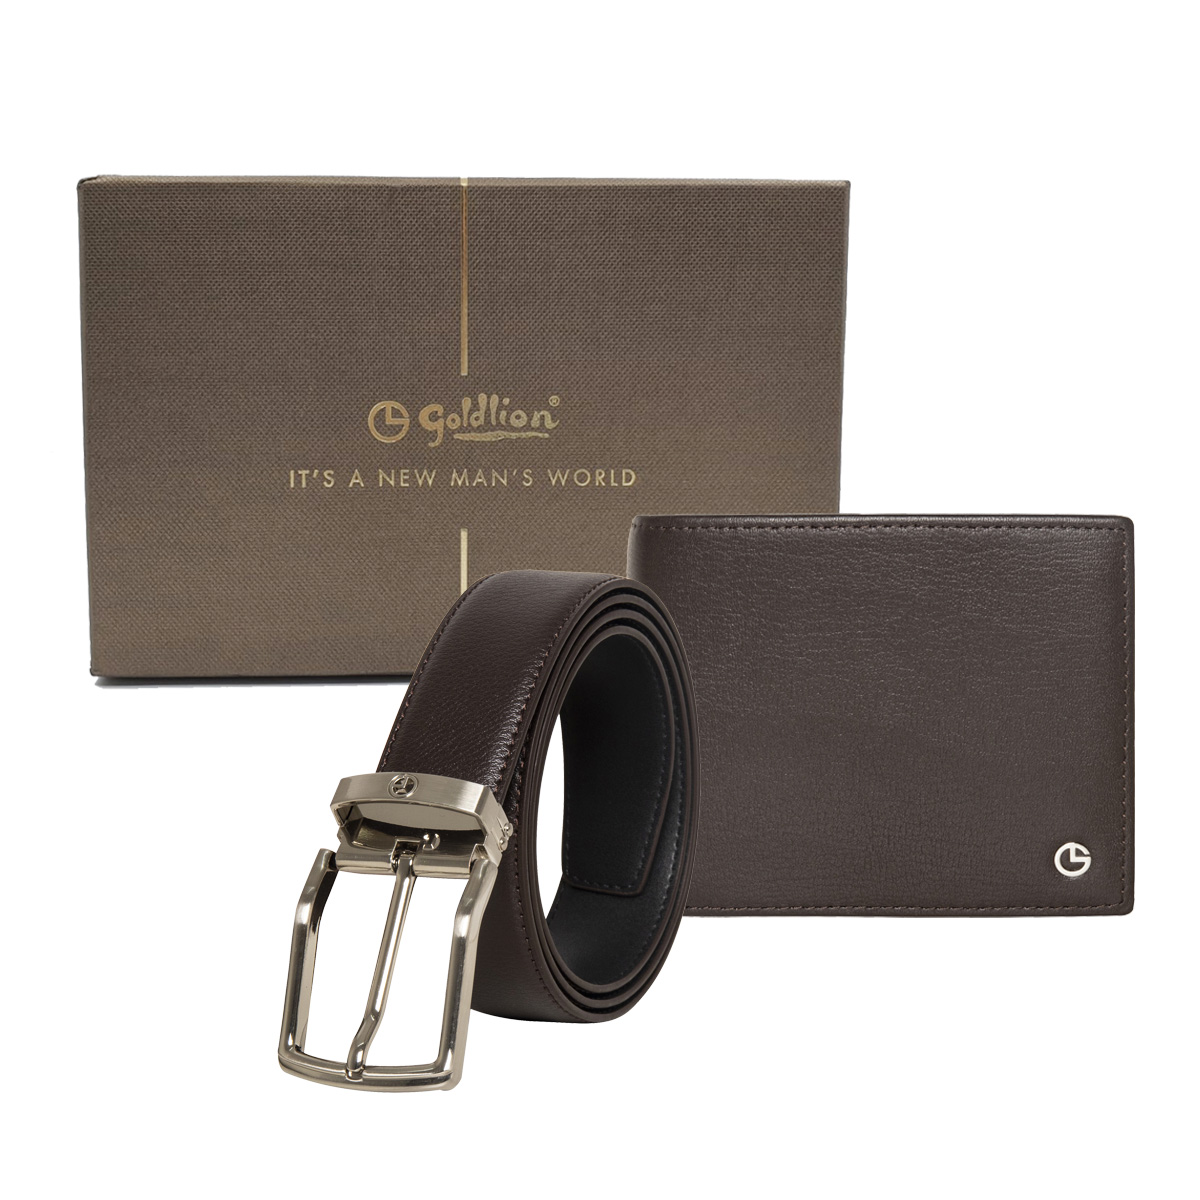 [Online Exclusive] Goldlion Genuine Leather 9 Cards Slot Wallet & Pin Belt Gift Set